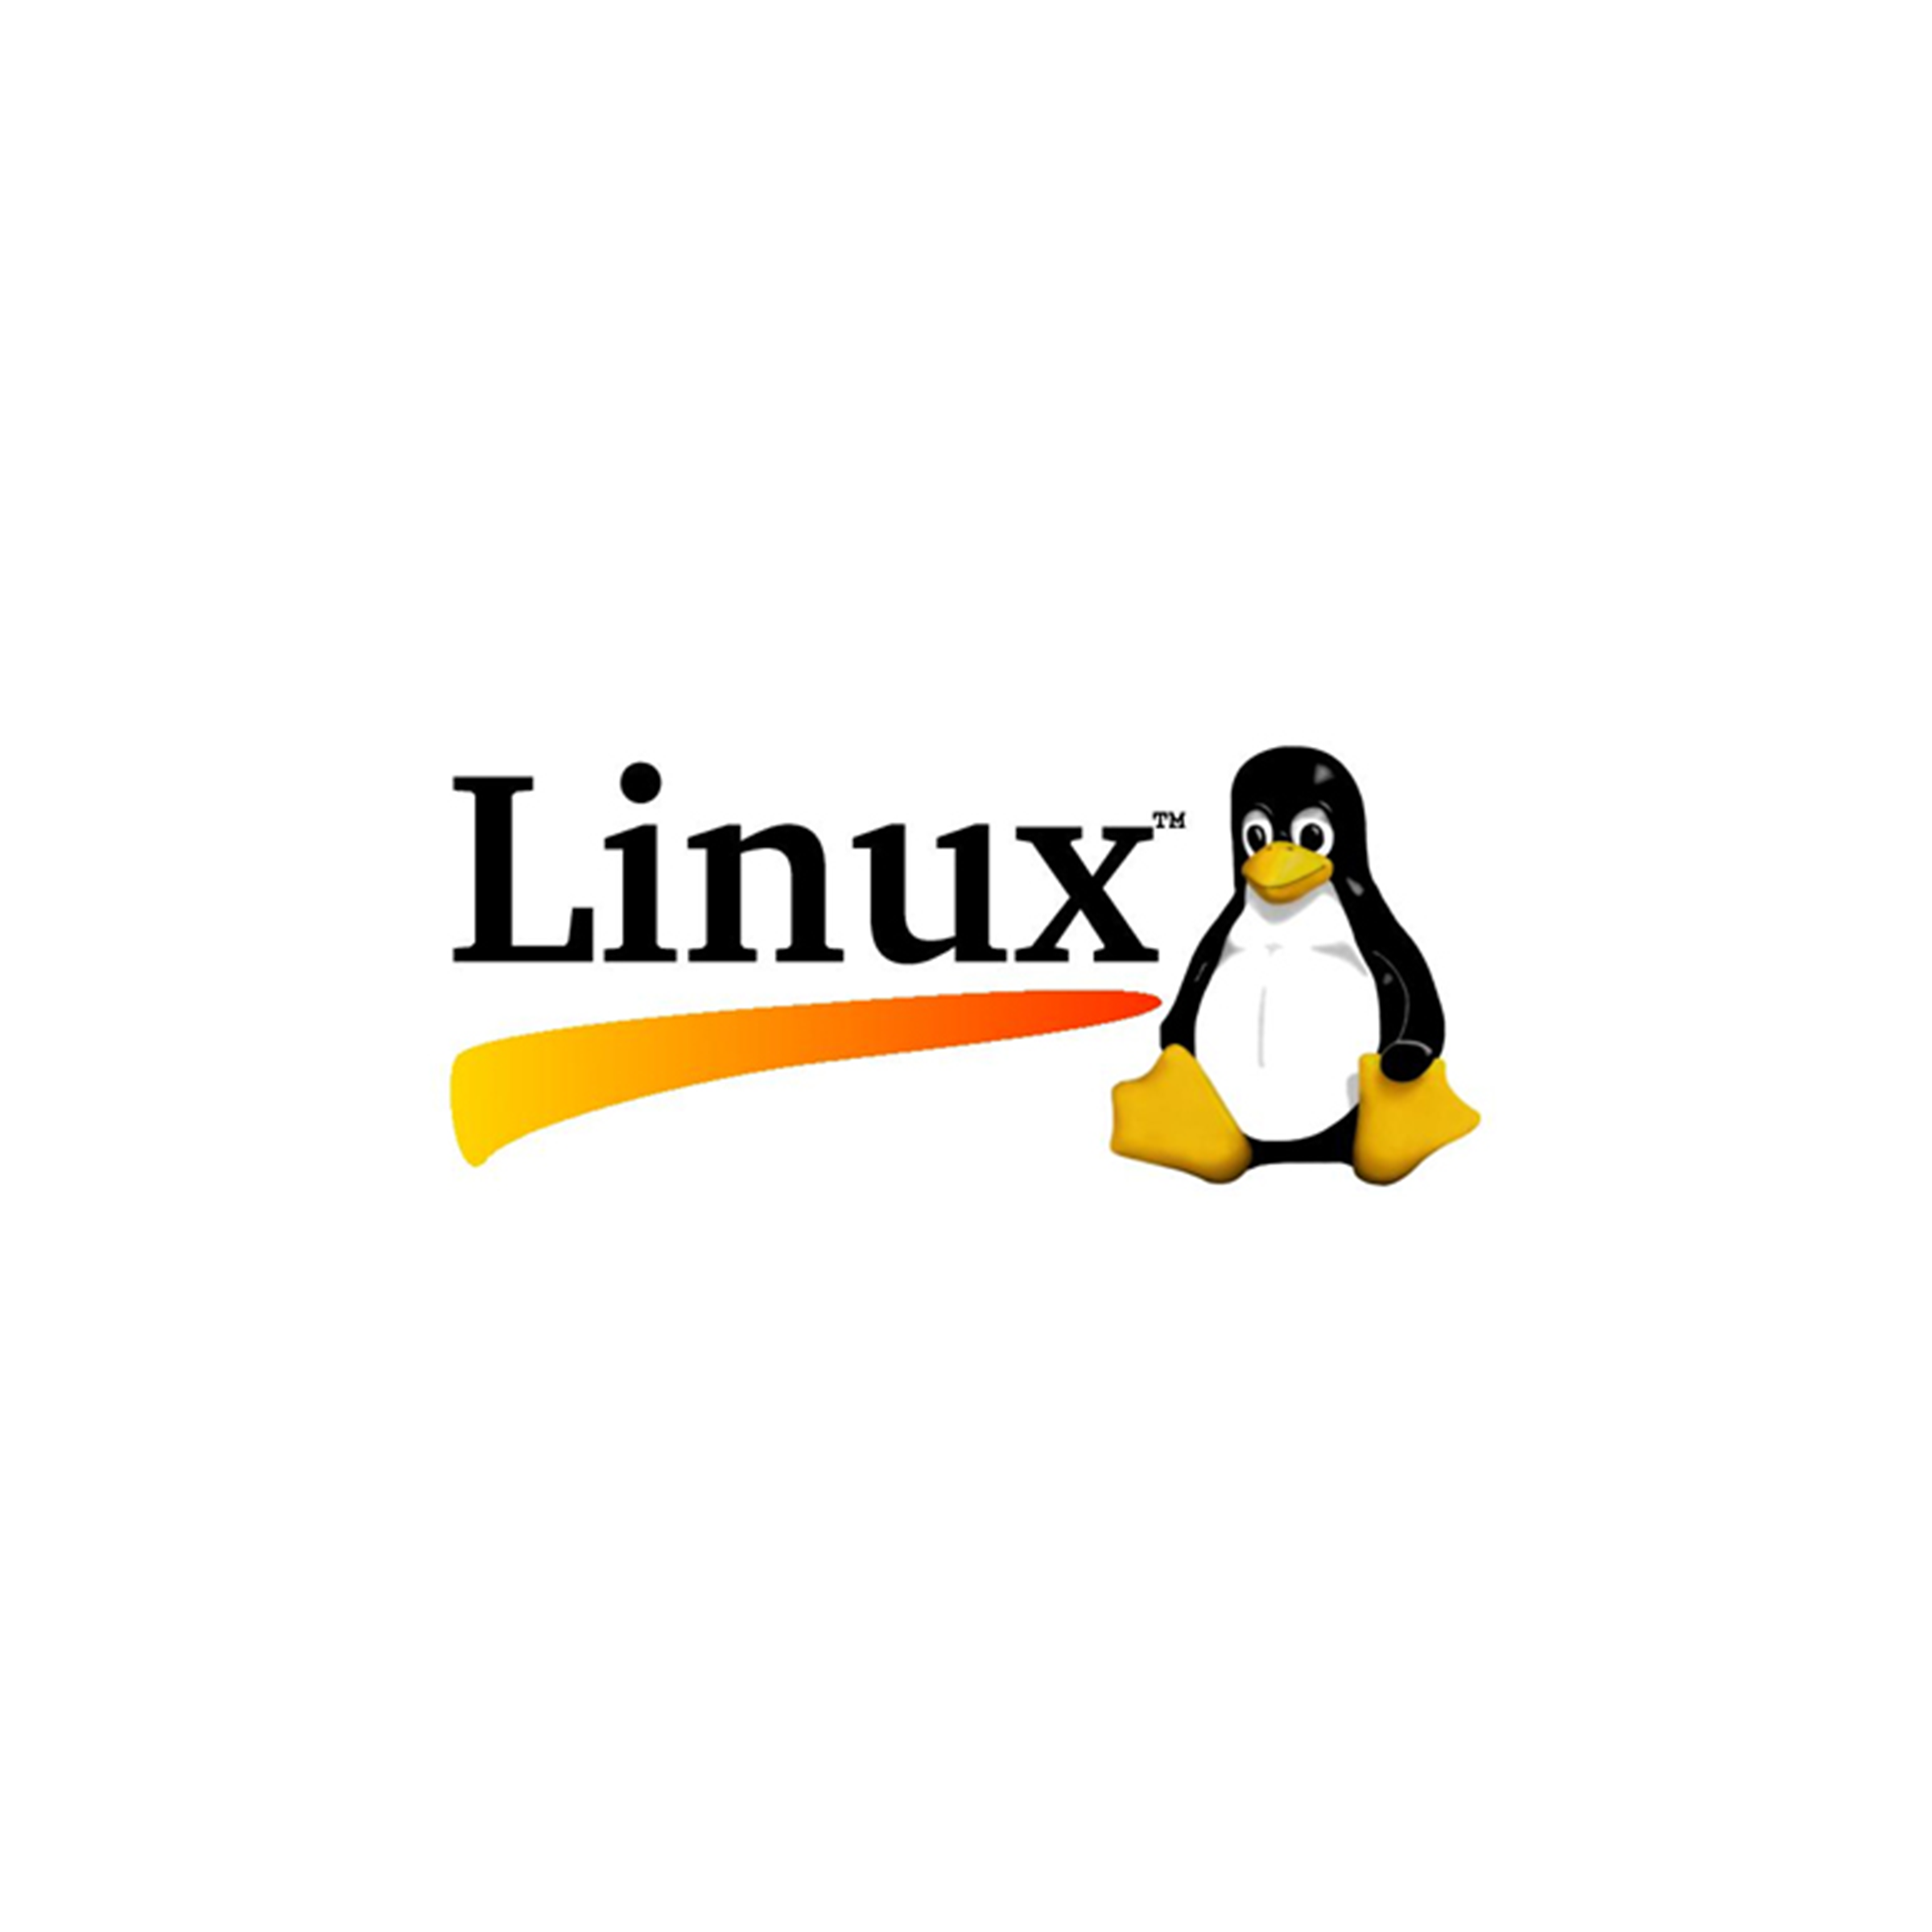 Mastering linux. Unix Linux логотип. Линукс логотип на прозрачном фоне. Linux Пингвин без фона. Linux стикер.